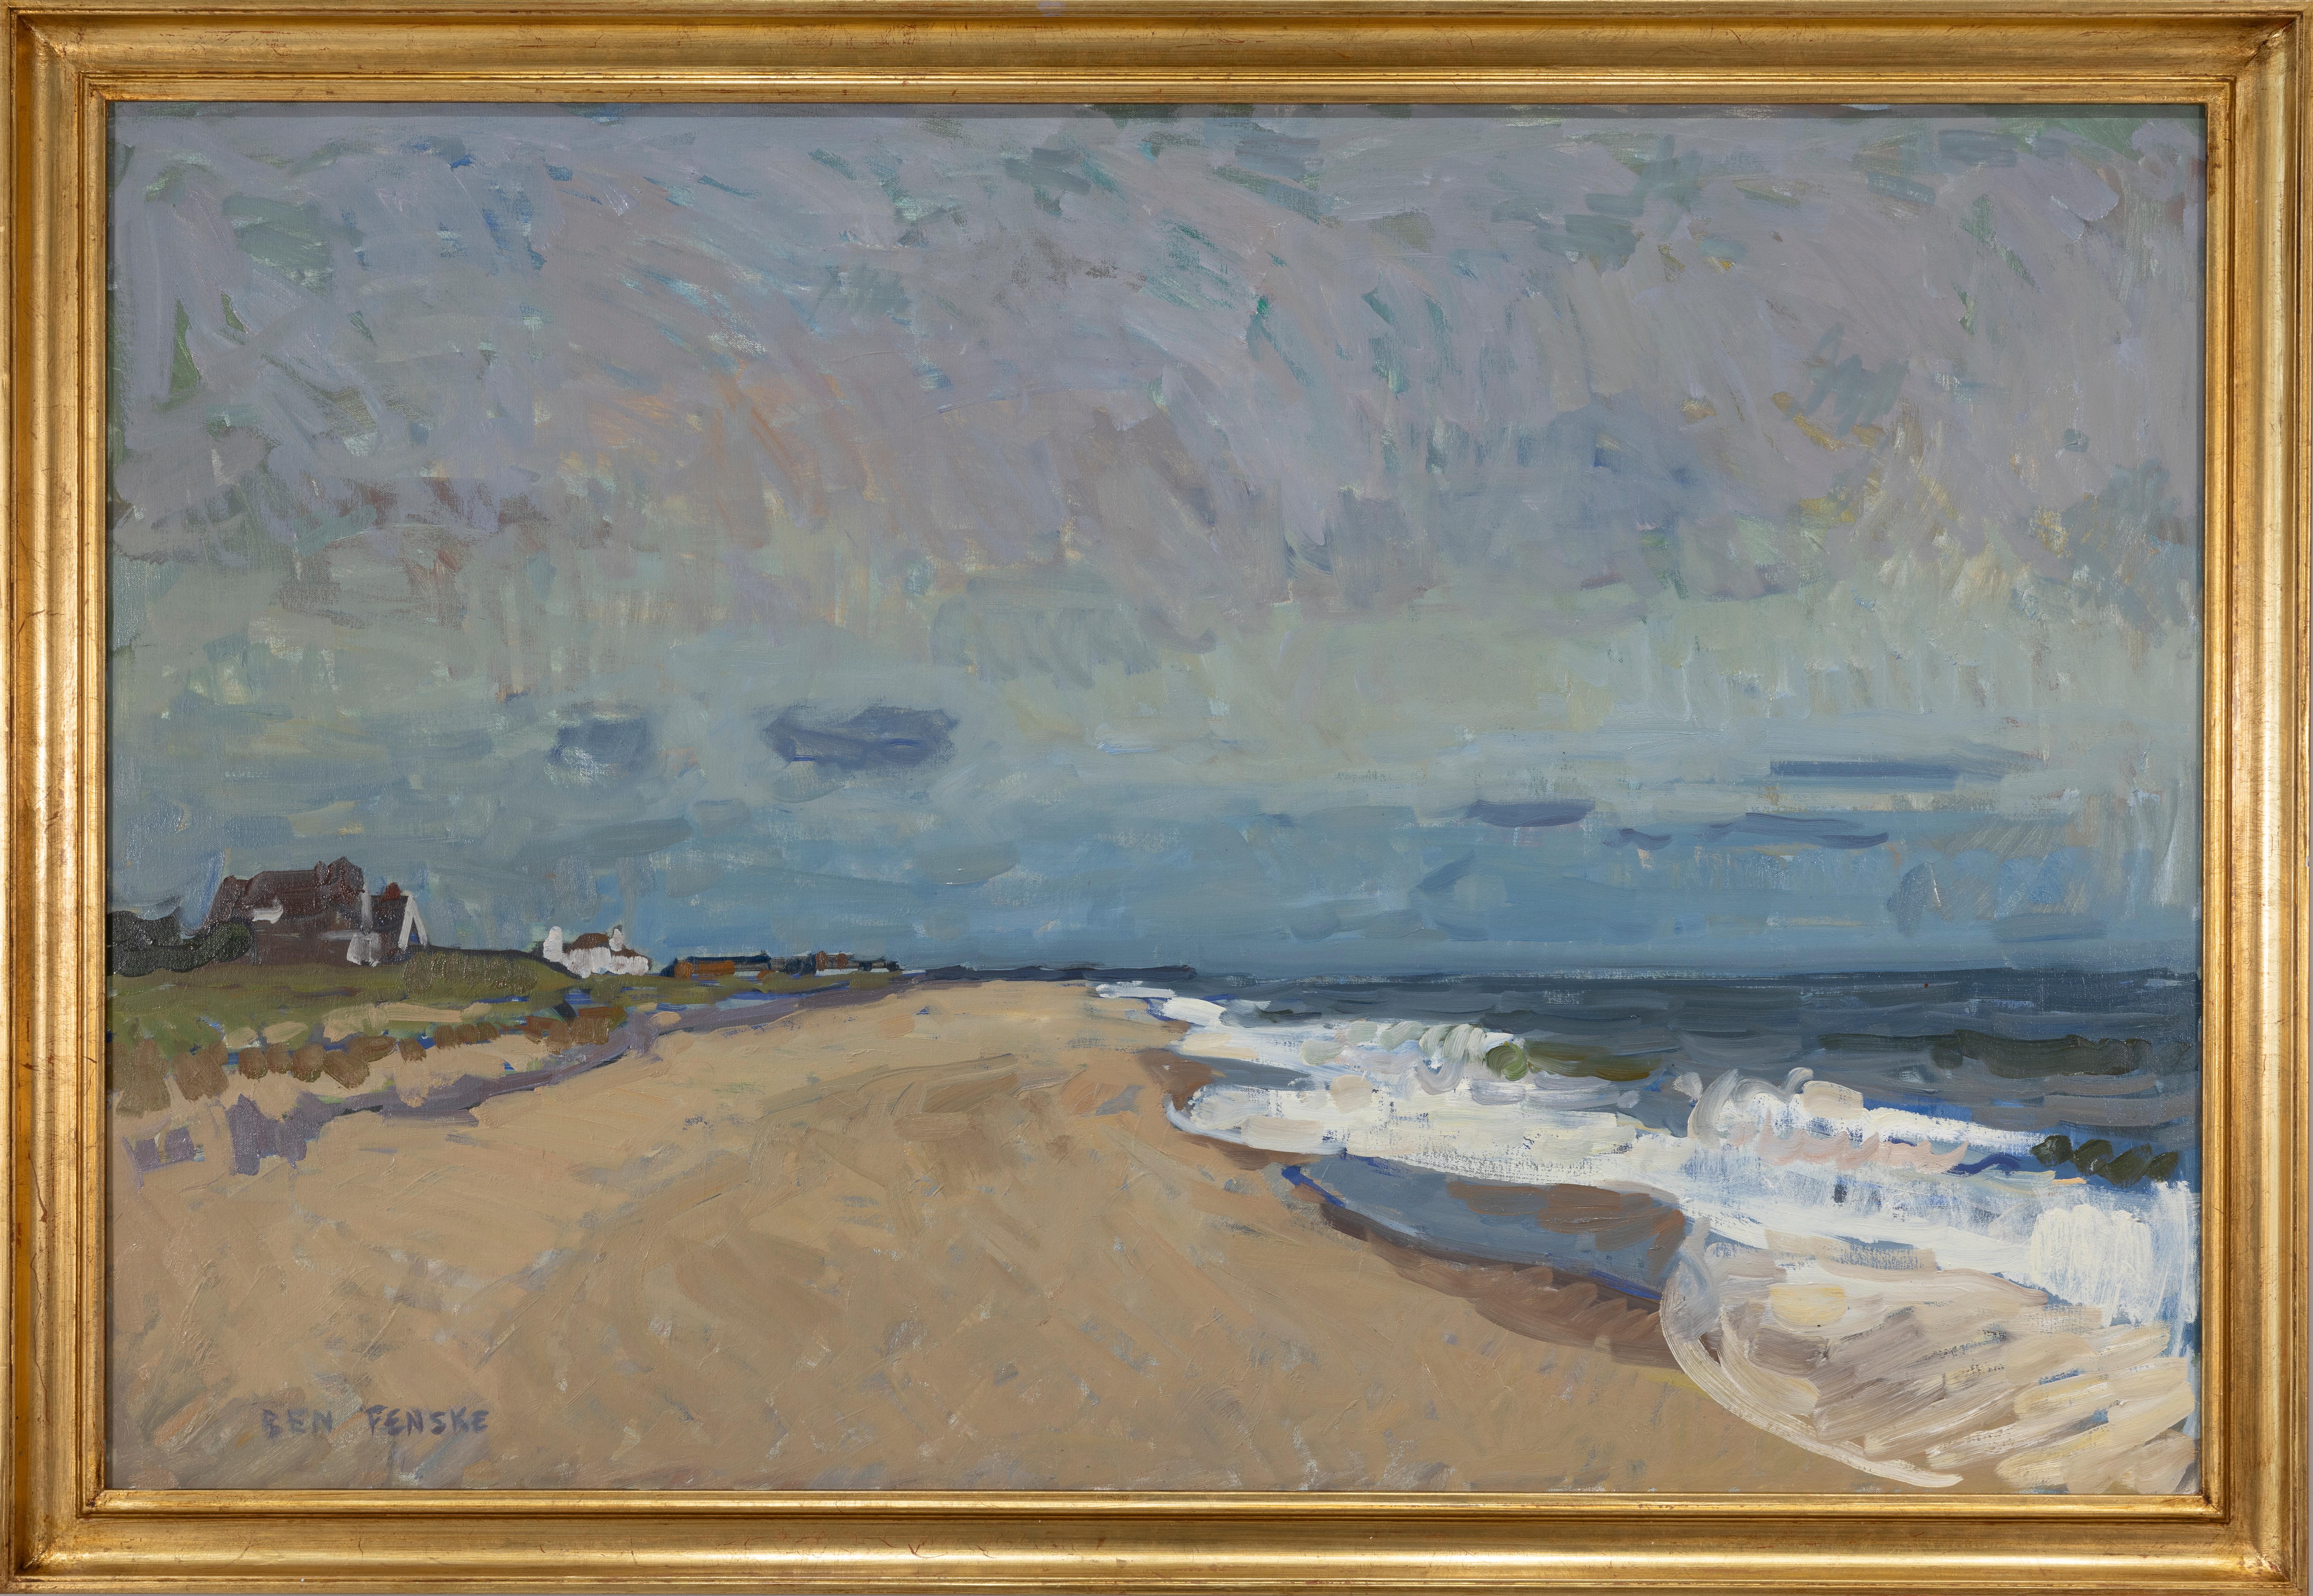 « Peter's Pond, septembre », vue impressionniste de la plage de Sagaponack en plein air - Painting de Ben Fenske